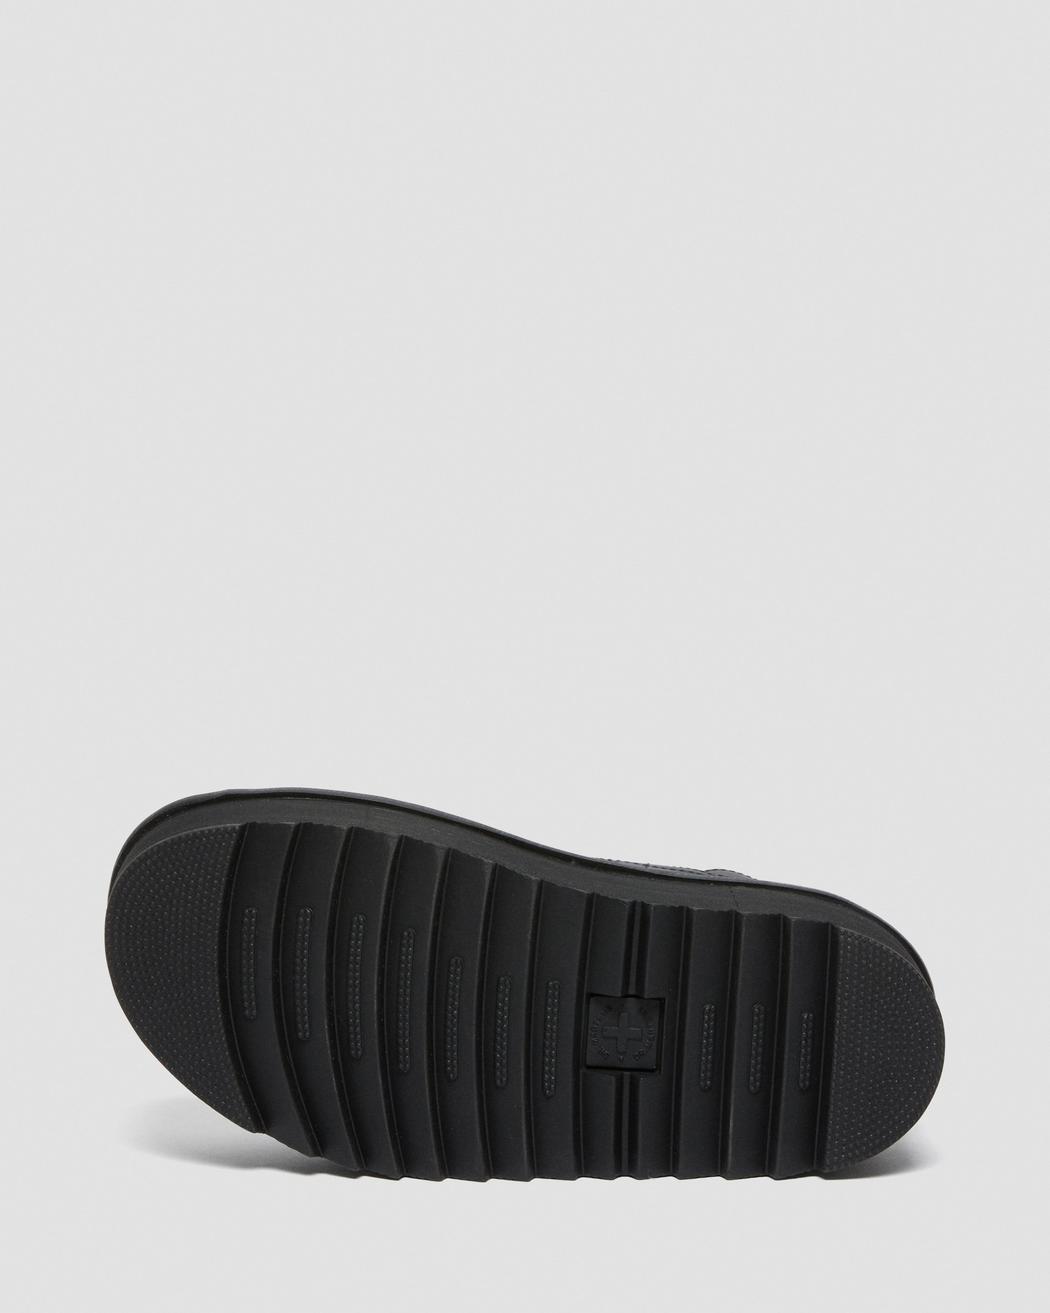 Dr. Martens Voss Quad Black Hydro Leather Sandals 26725001